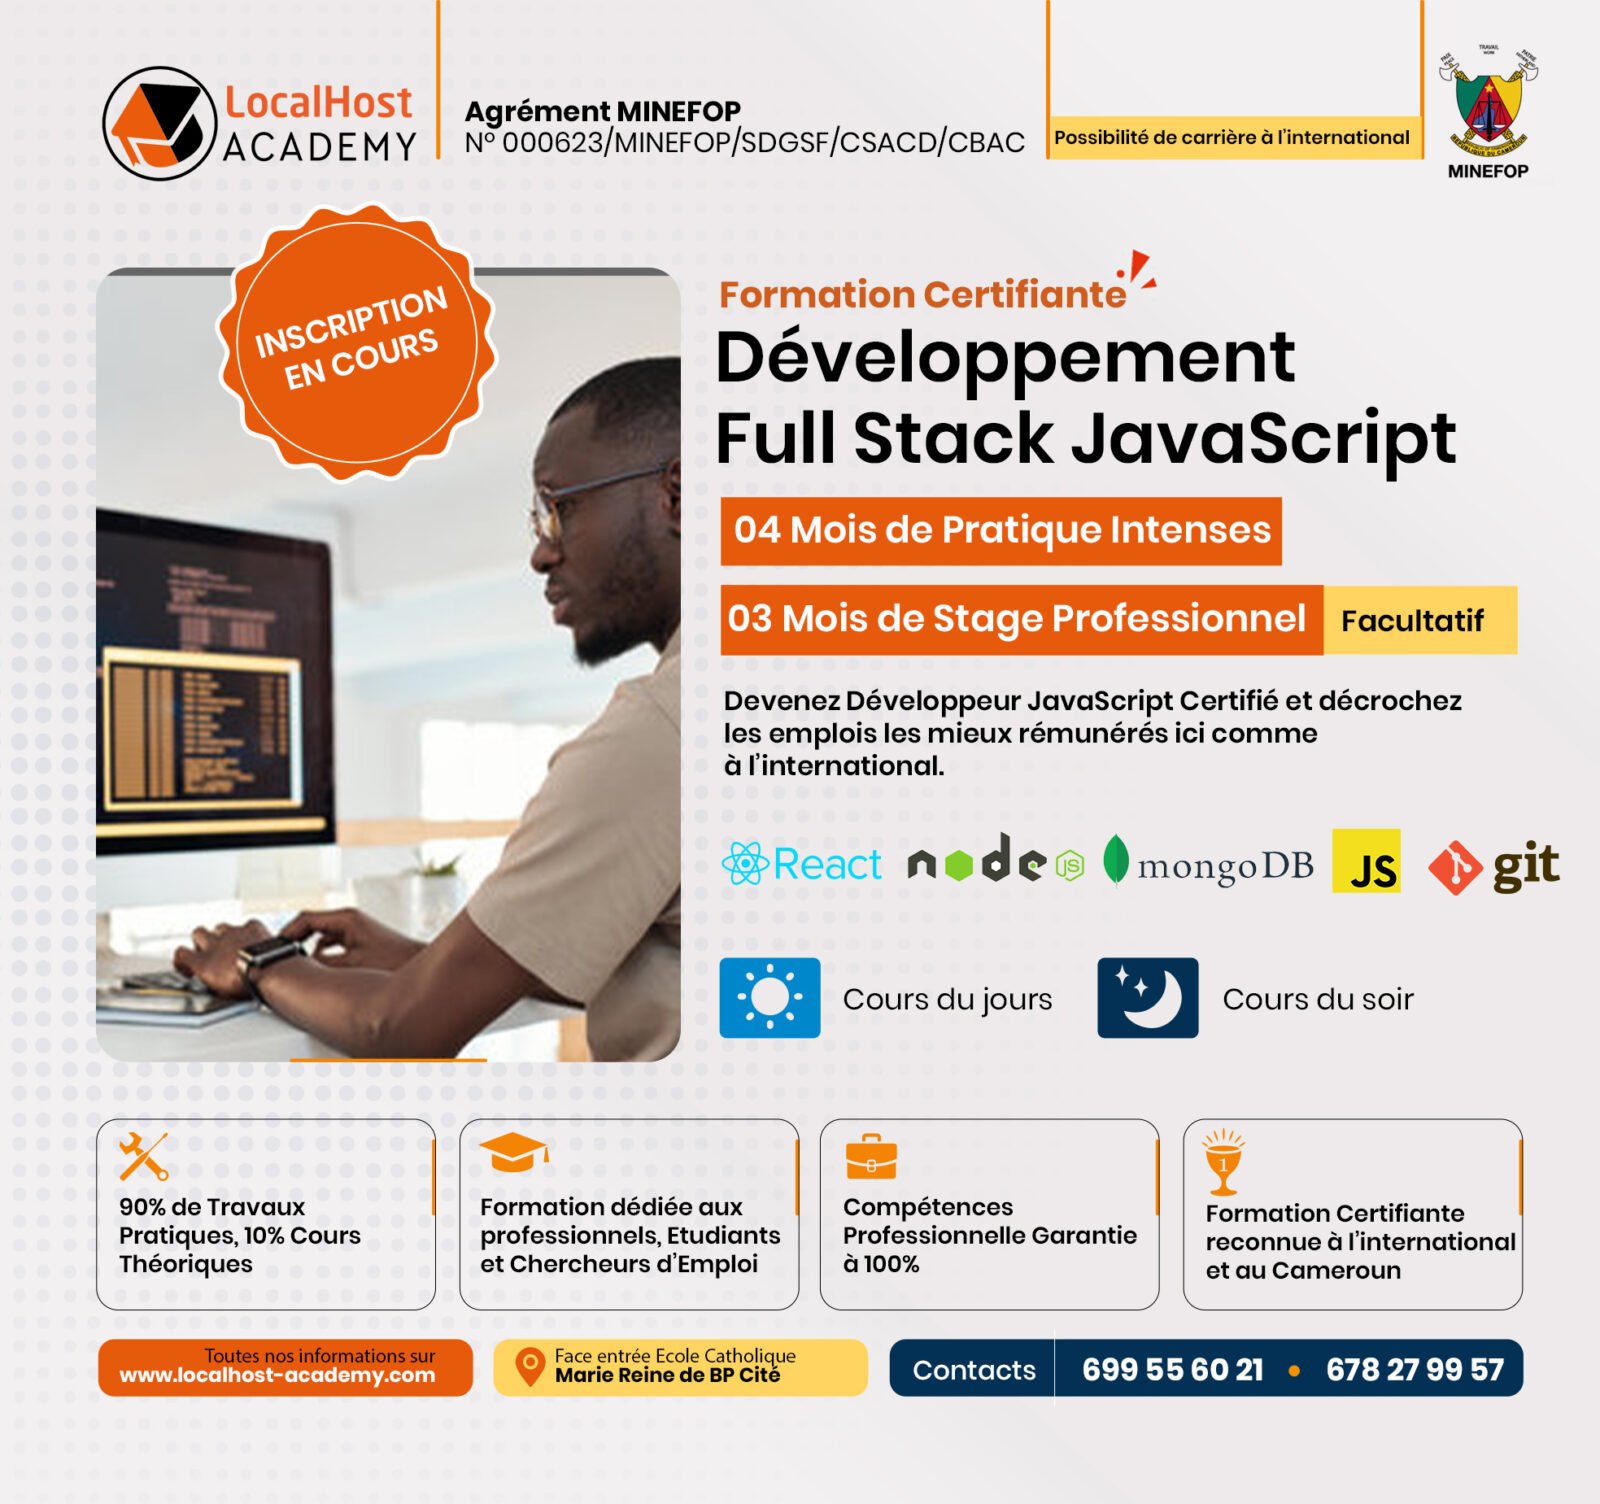 Les Meilleures Écoles pour une Formation en Développement Web Full Stack Javascript au Cameroun